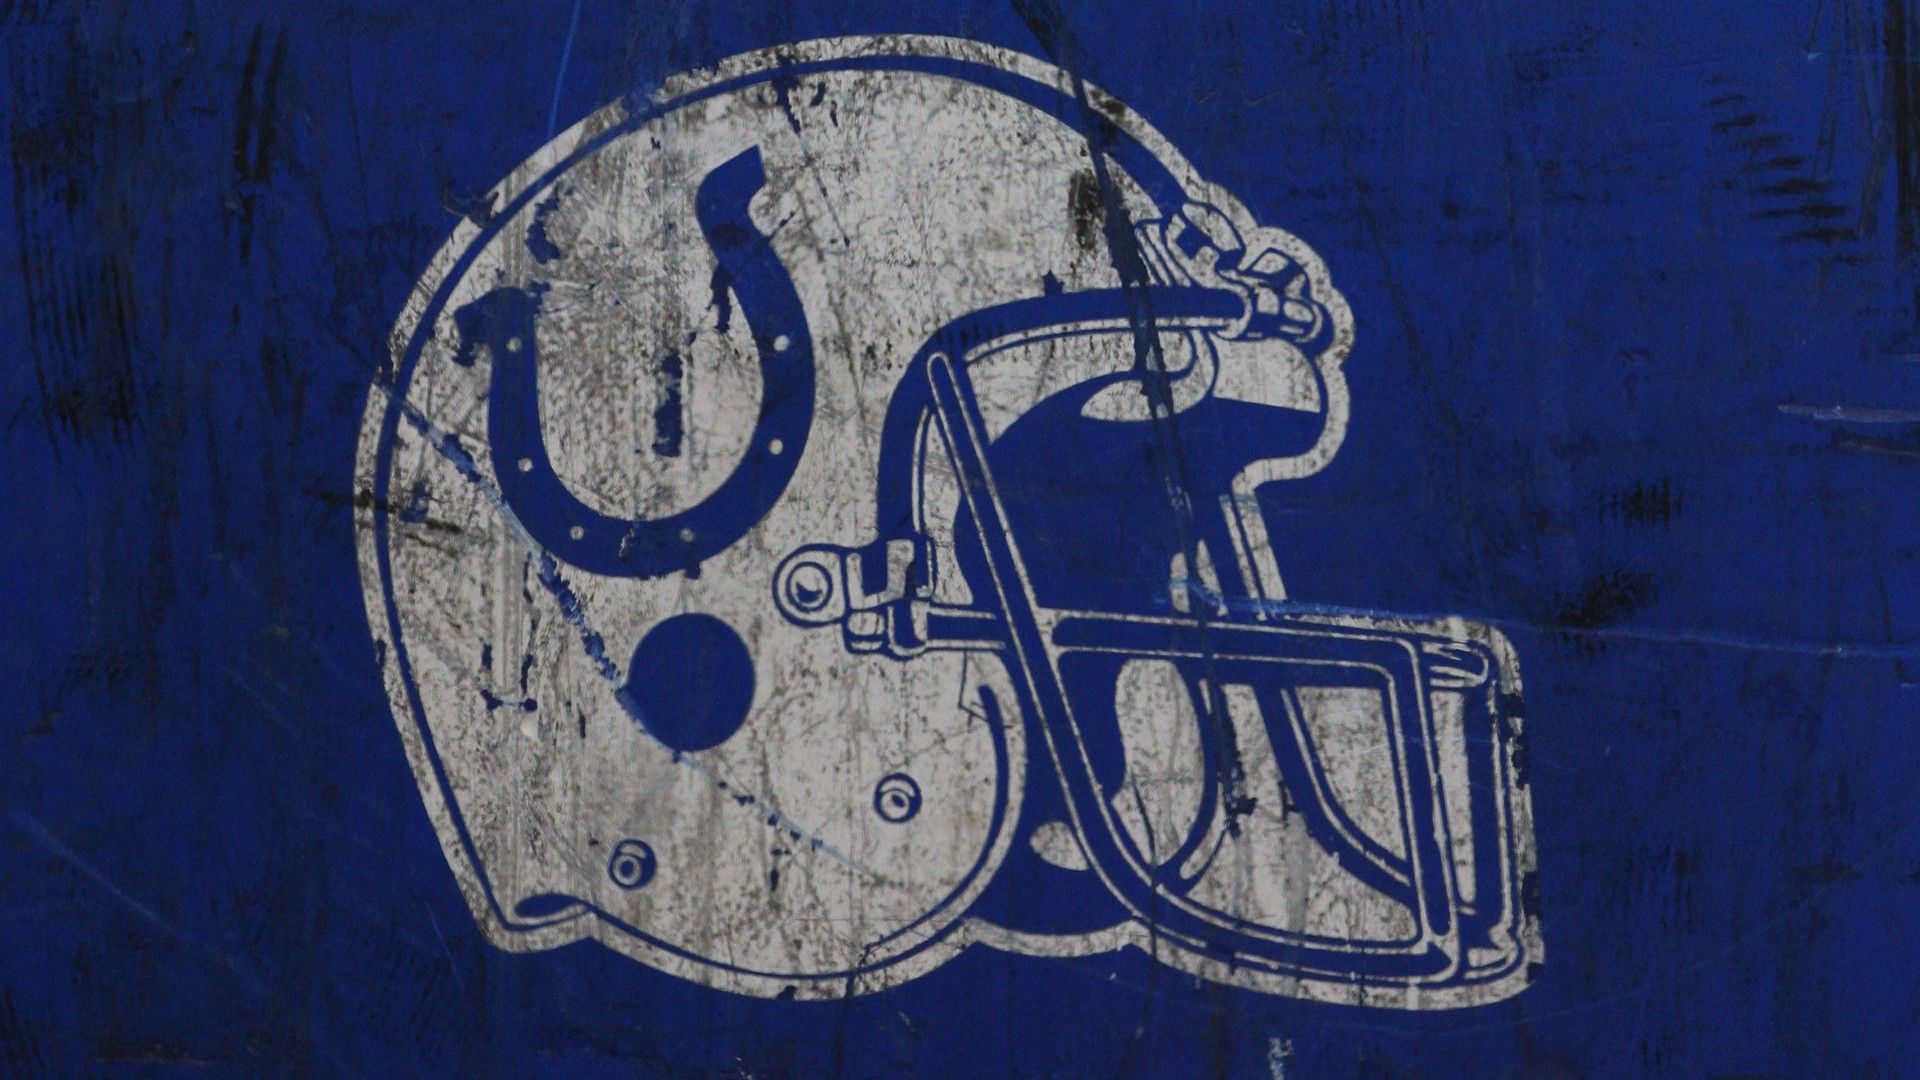 HD Desktop Wallpaper Indianapolis Colts NFL NFL Football Wallpaper